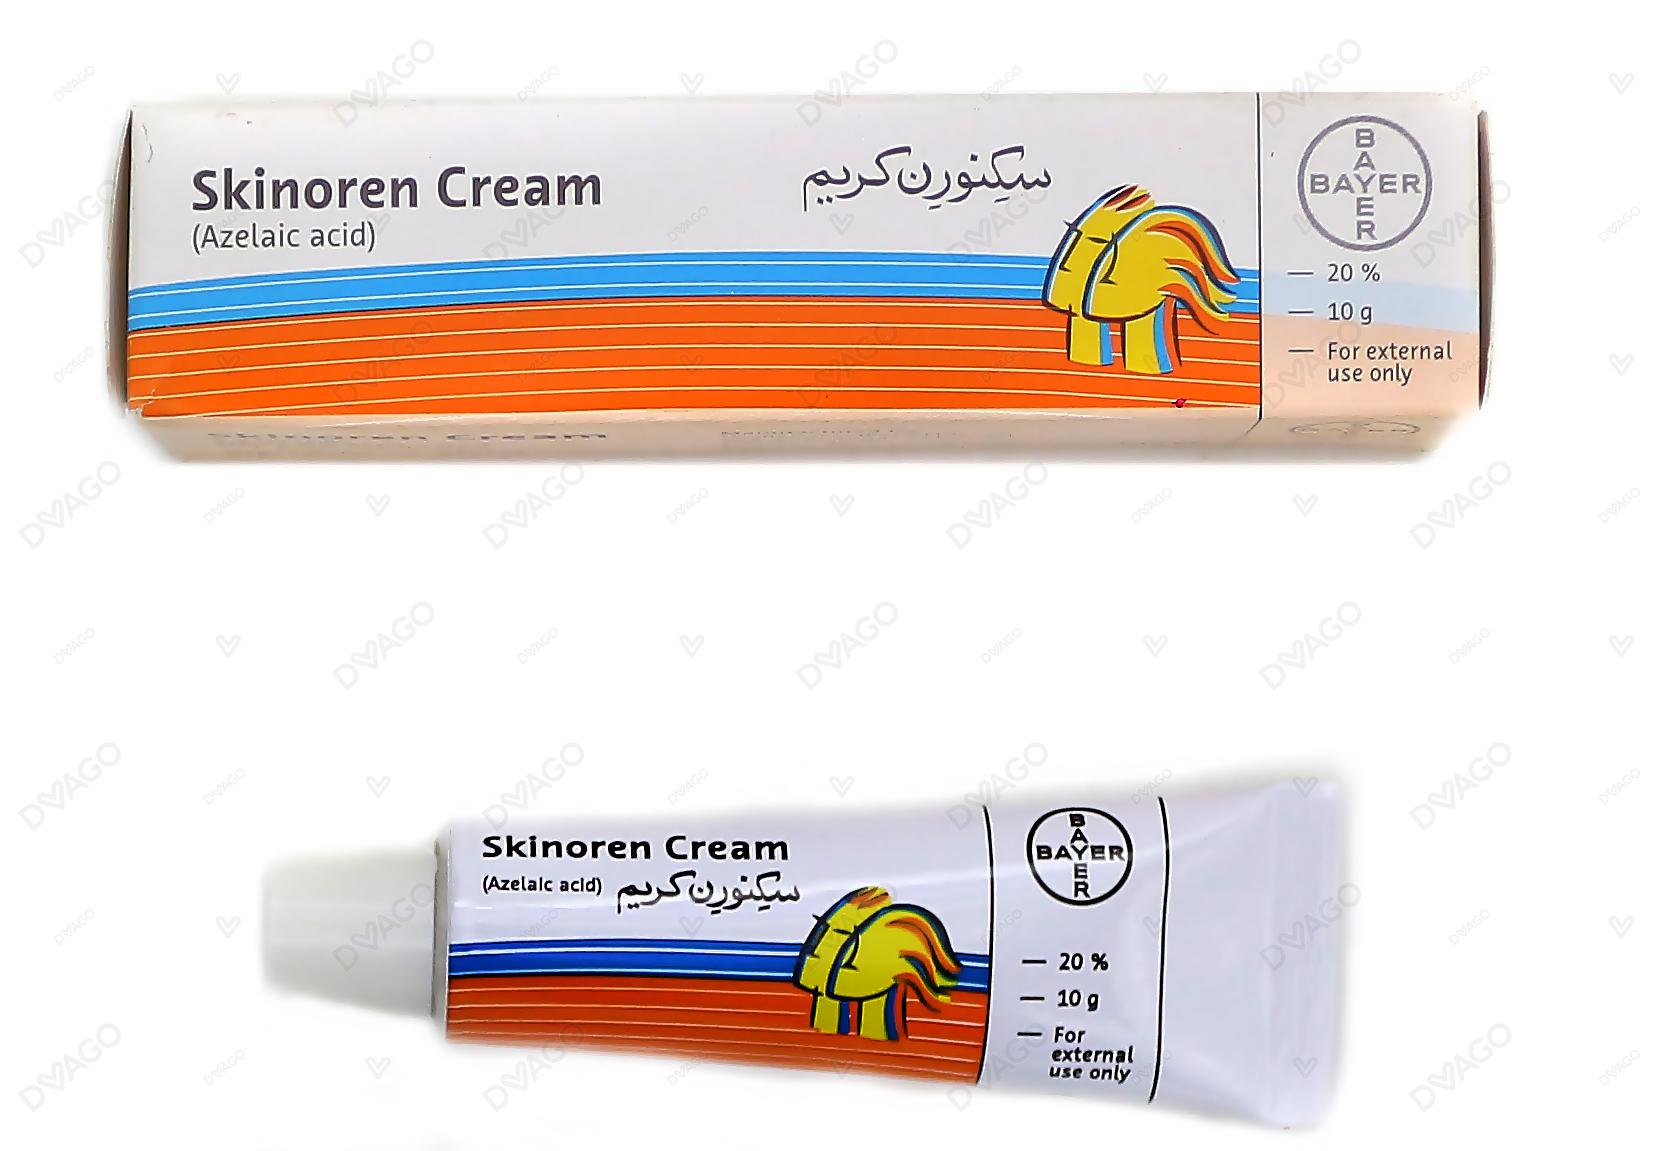 Skinoren cream